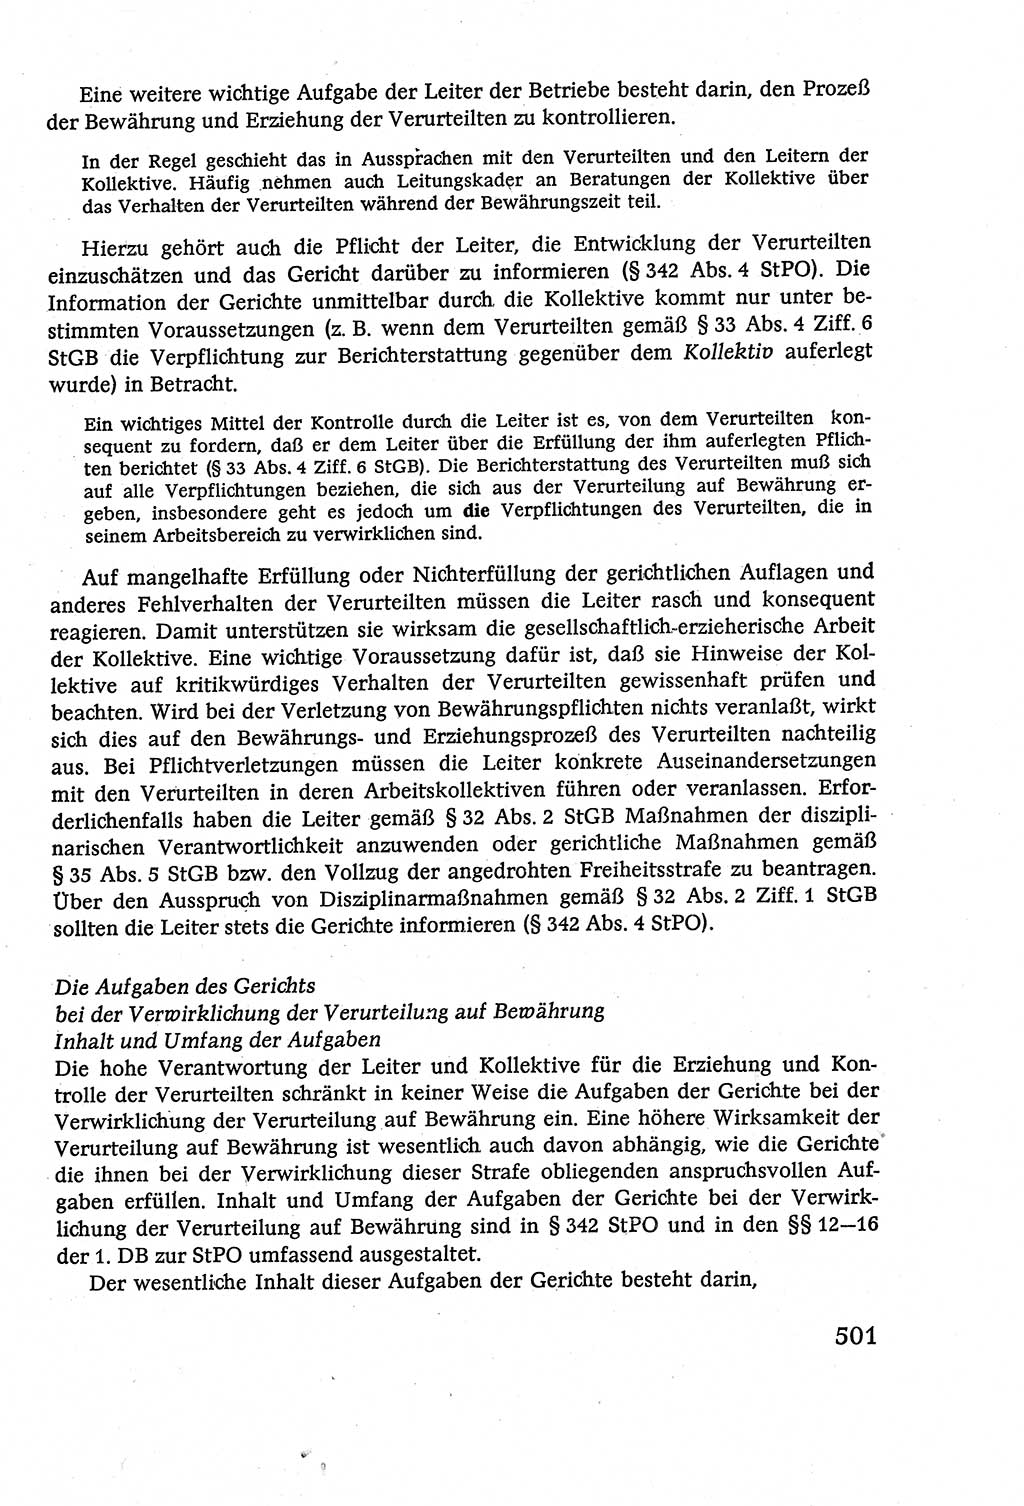 Strafverfahrensrecht [Deutsche Demokratische Republik (DDR)], Lehrbuch 1977, Seite 501 (Strafverf.-R. DDR Lb. 1977, S. 501)